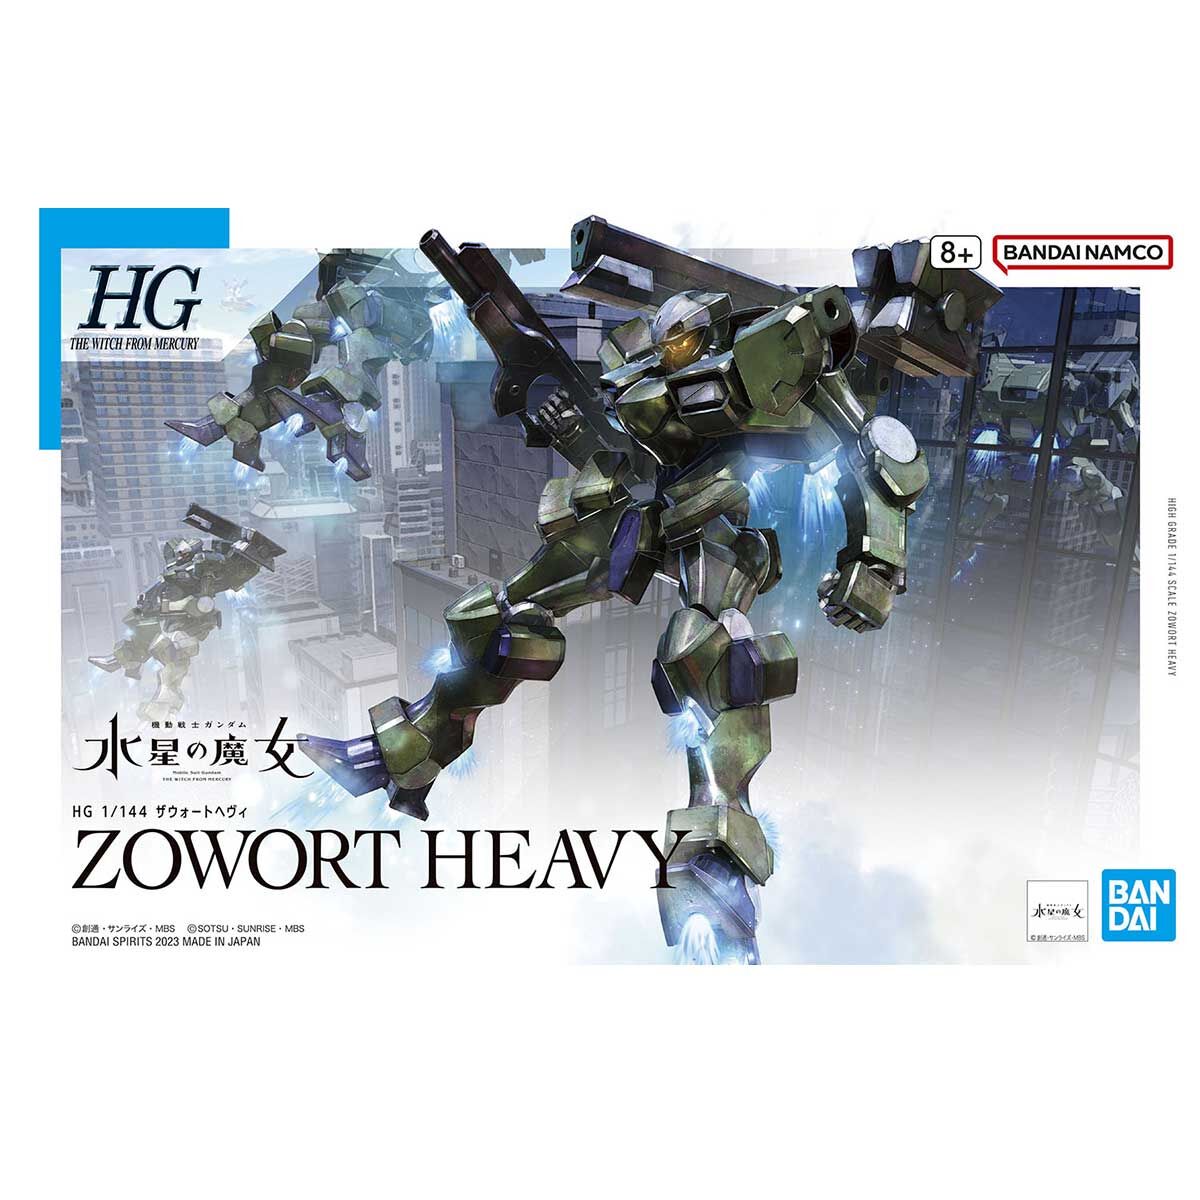 HG Zowort Heavy 1/144